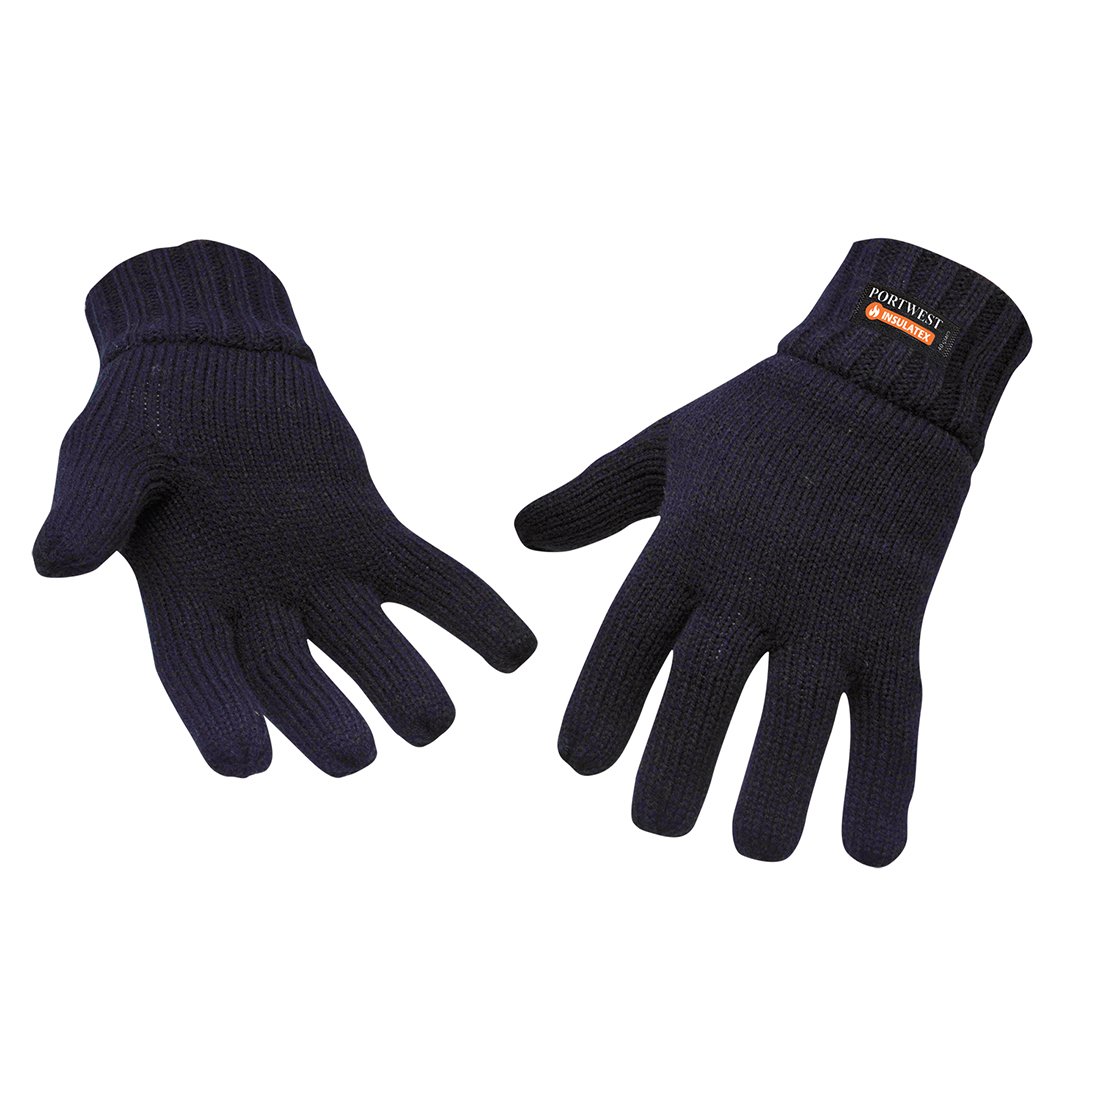 Produkt - Zimní rukavice Insulatex tmavě modrá 